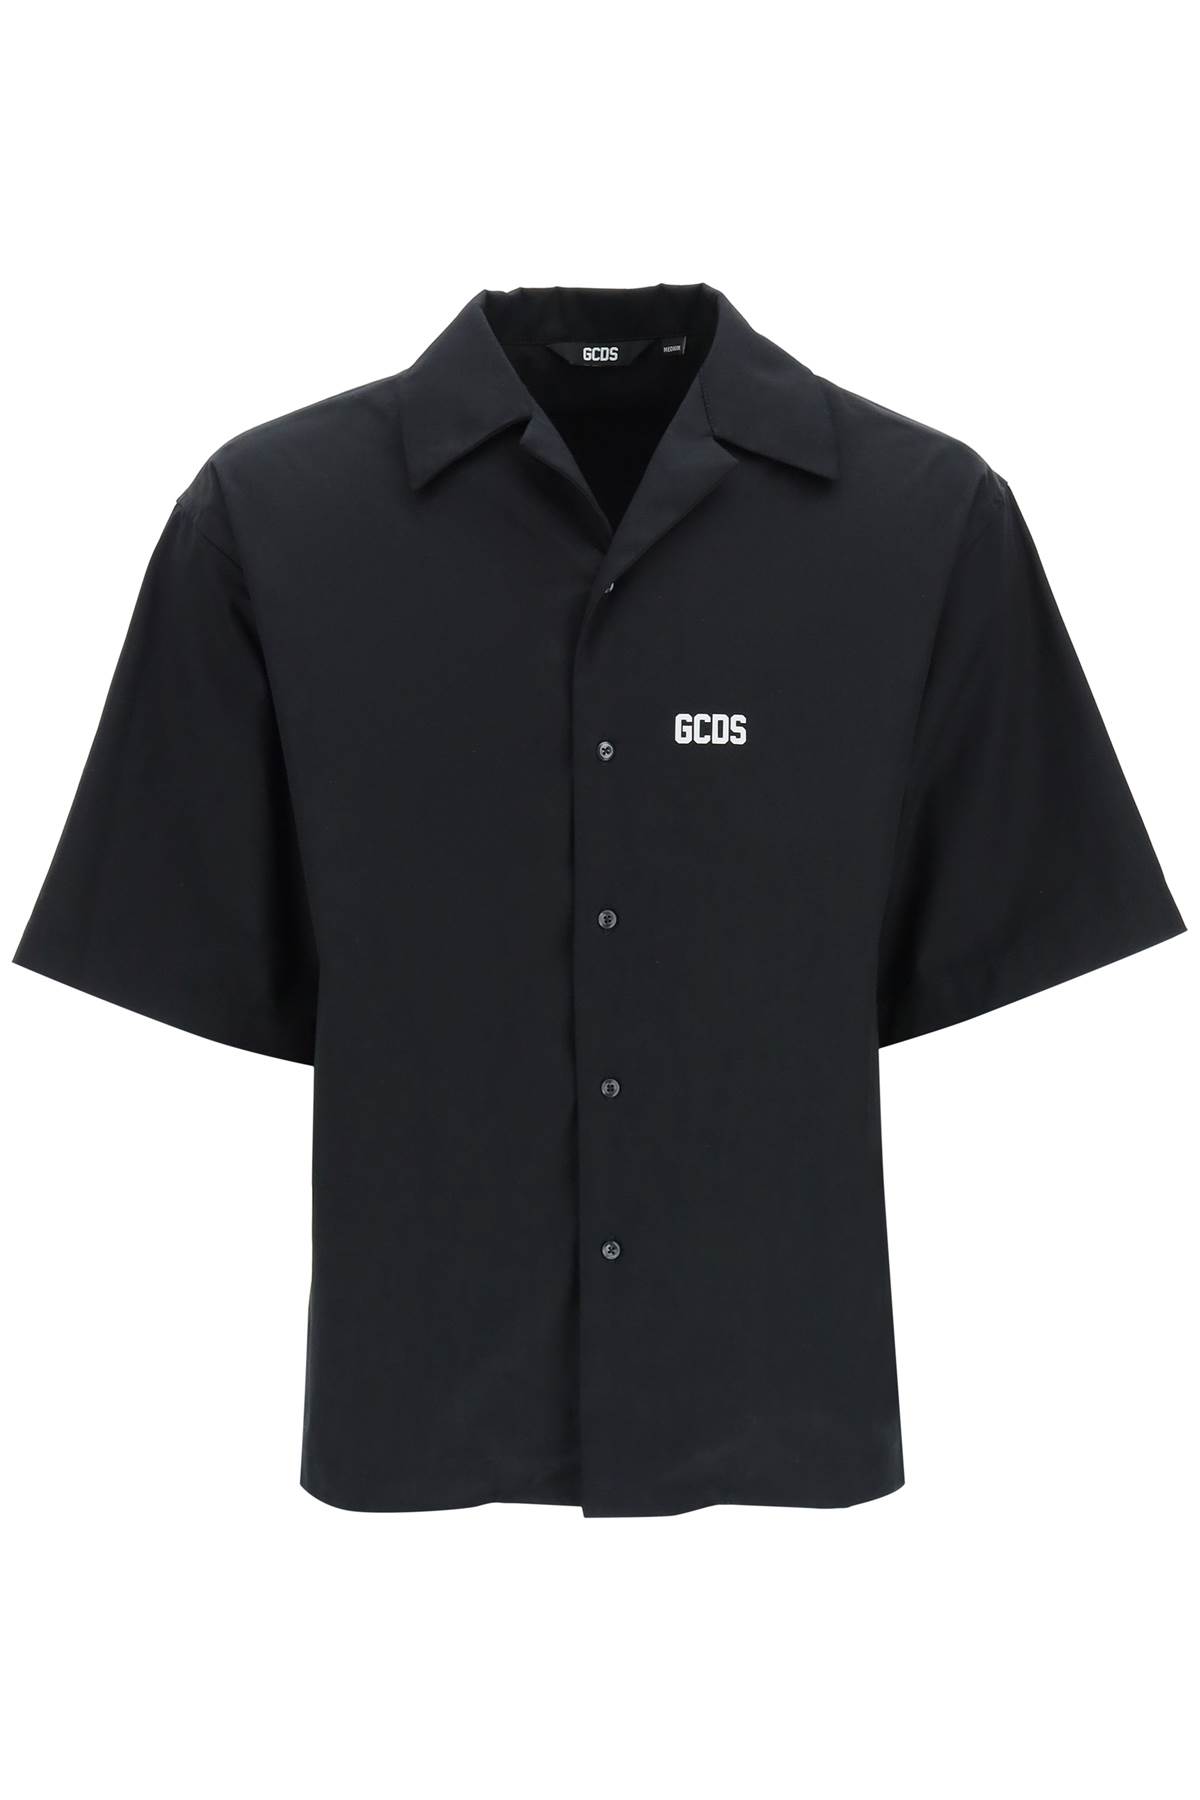 GCDS Bowling Shirt With Logo